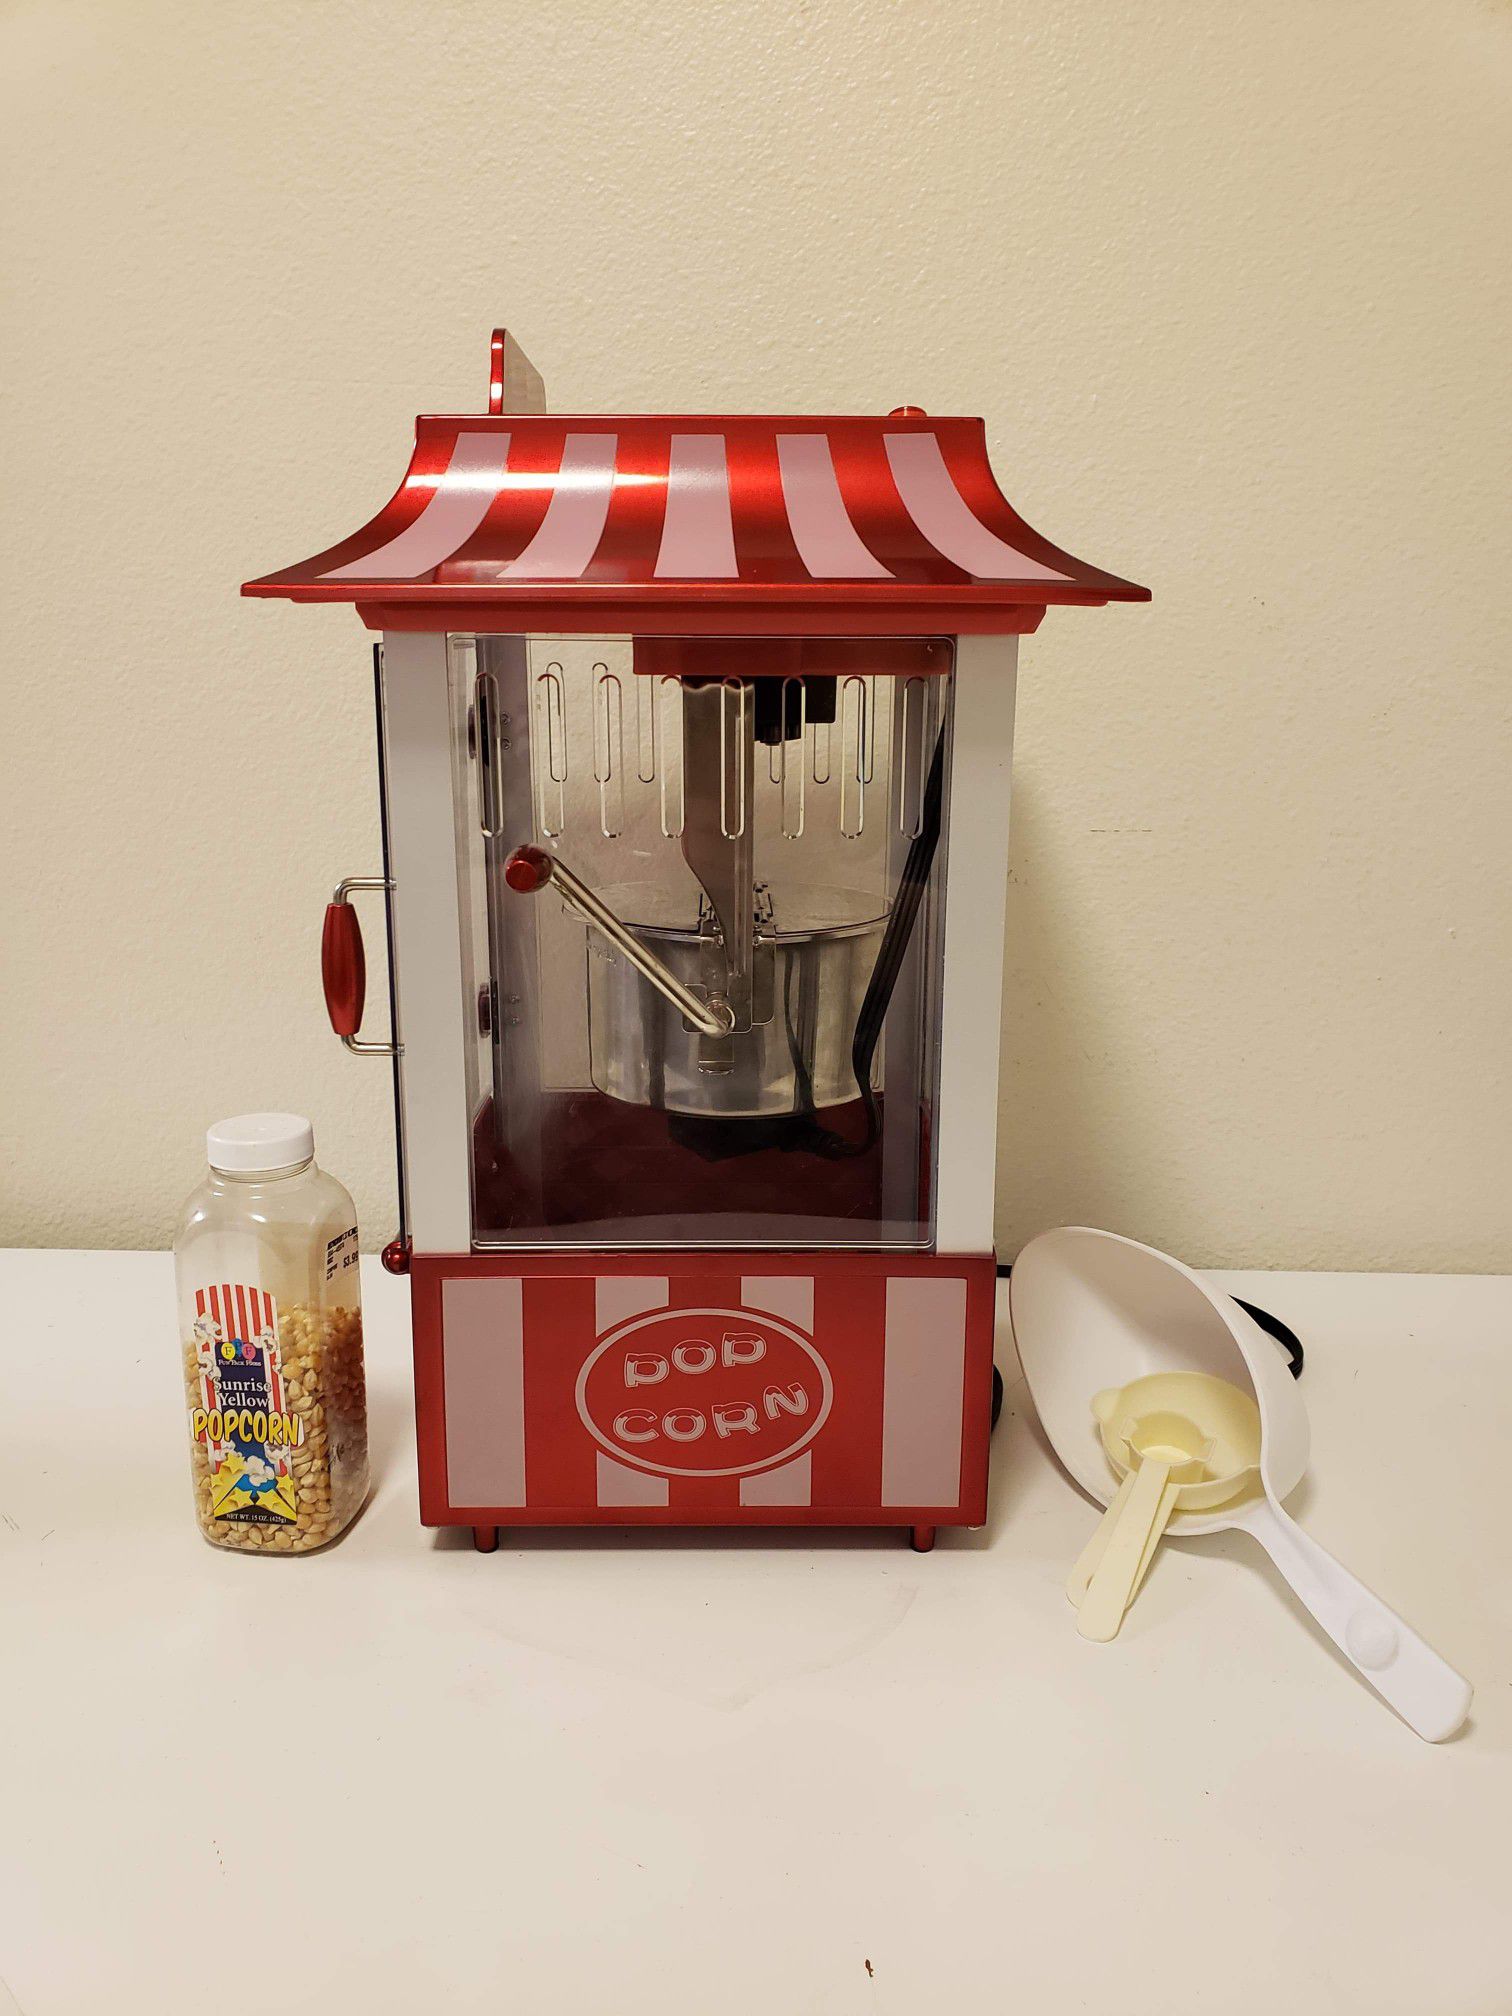 Mini Popcorn Maker Kit – Smart